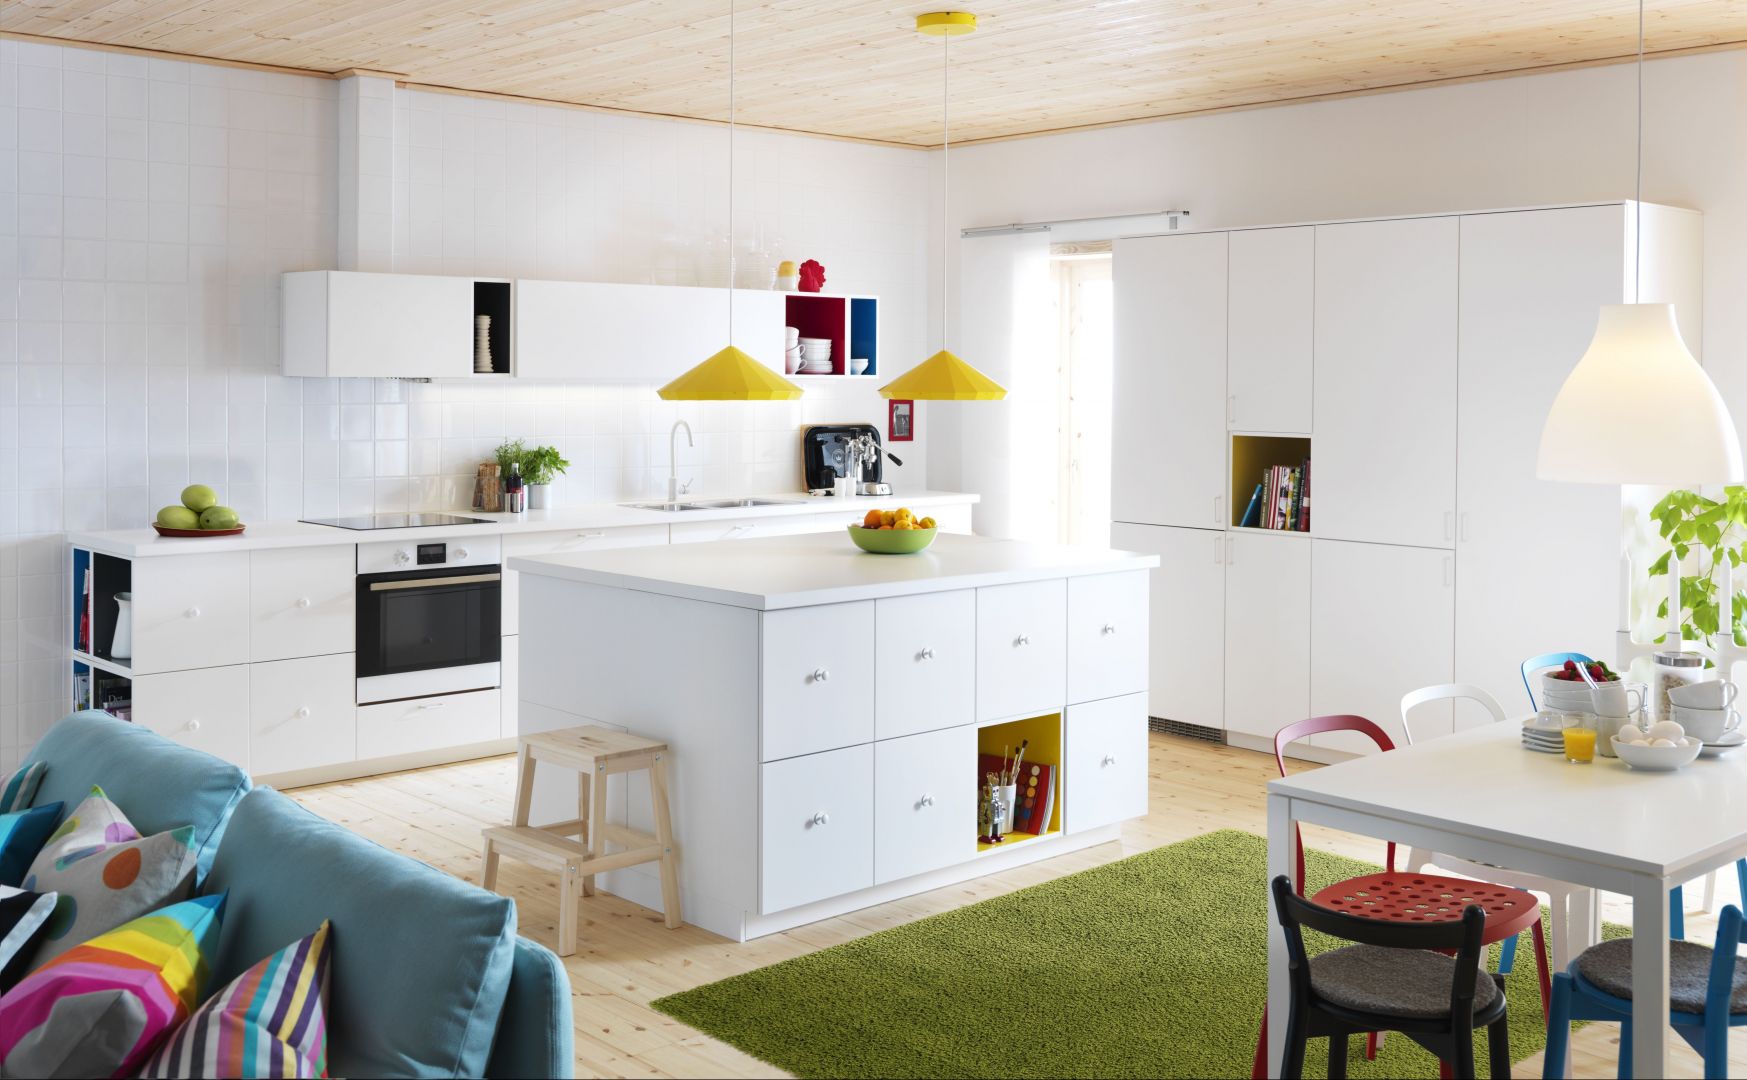 Kolorowe elementy, potrafią rozweselić każde pomieszczenie. Biała kuchnia z barwnymi detalami marki Ikea
Fot. Ikea